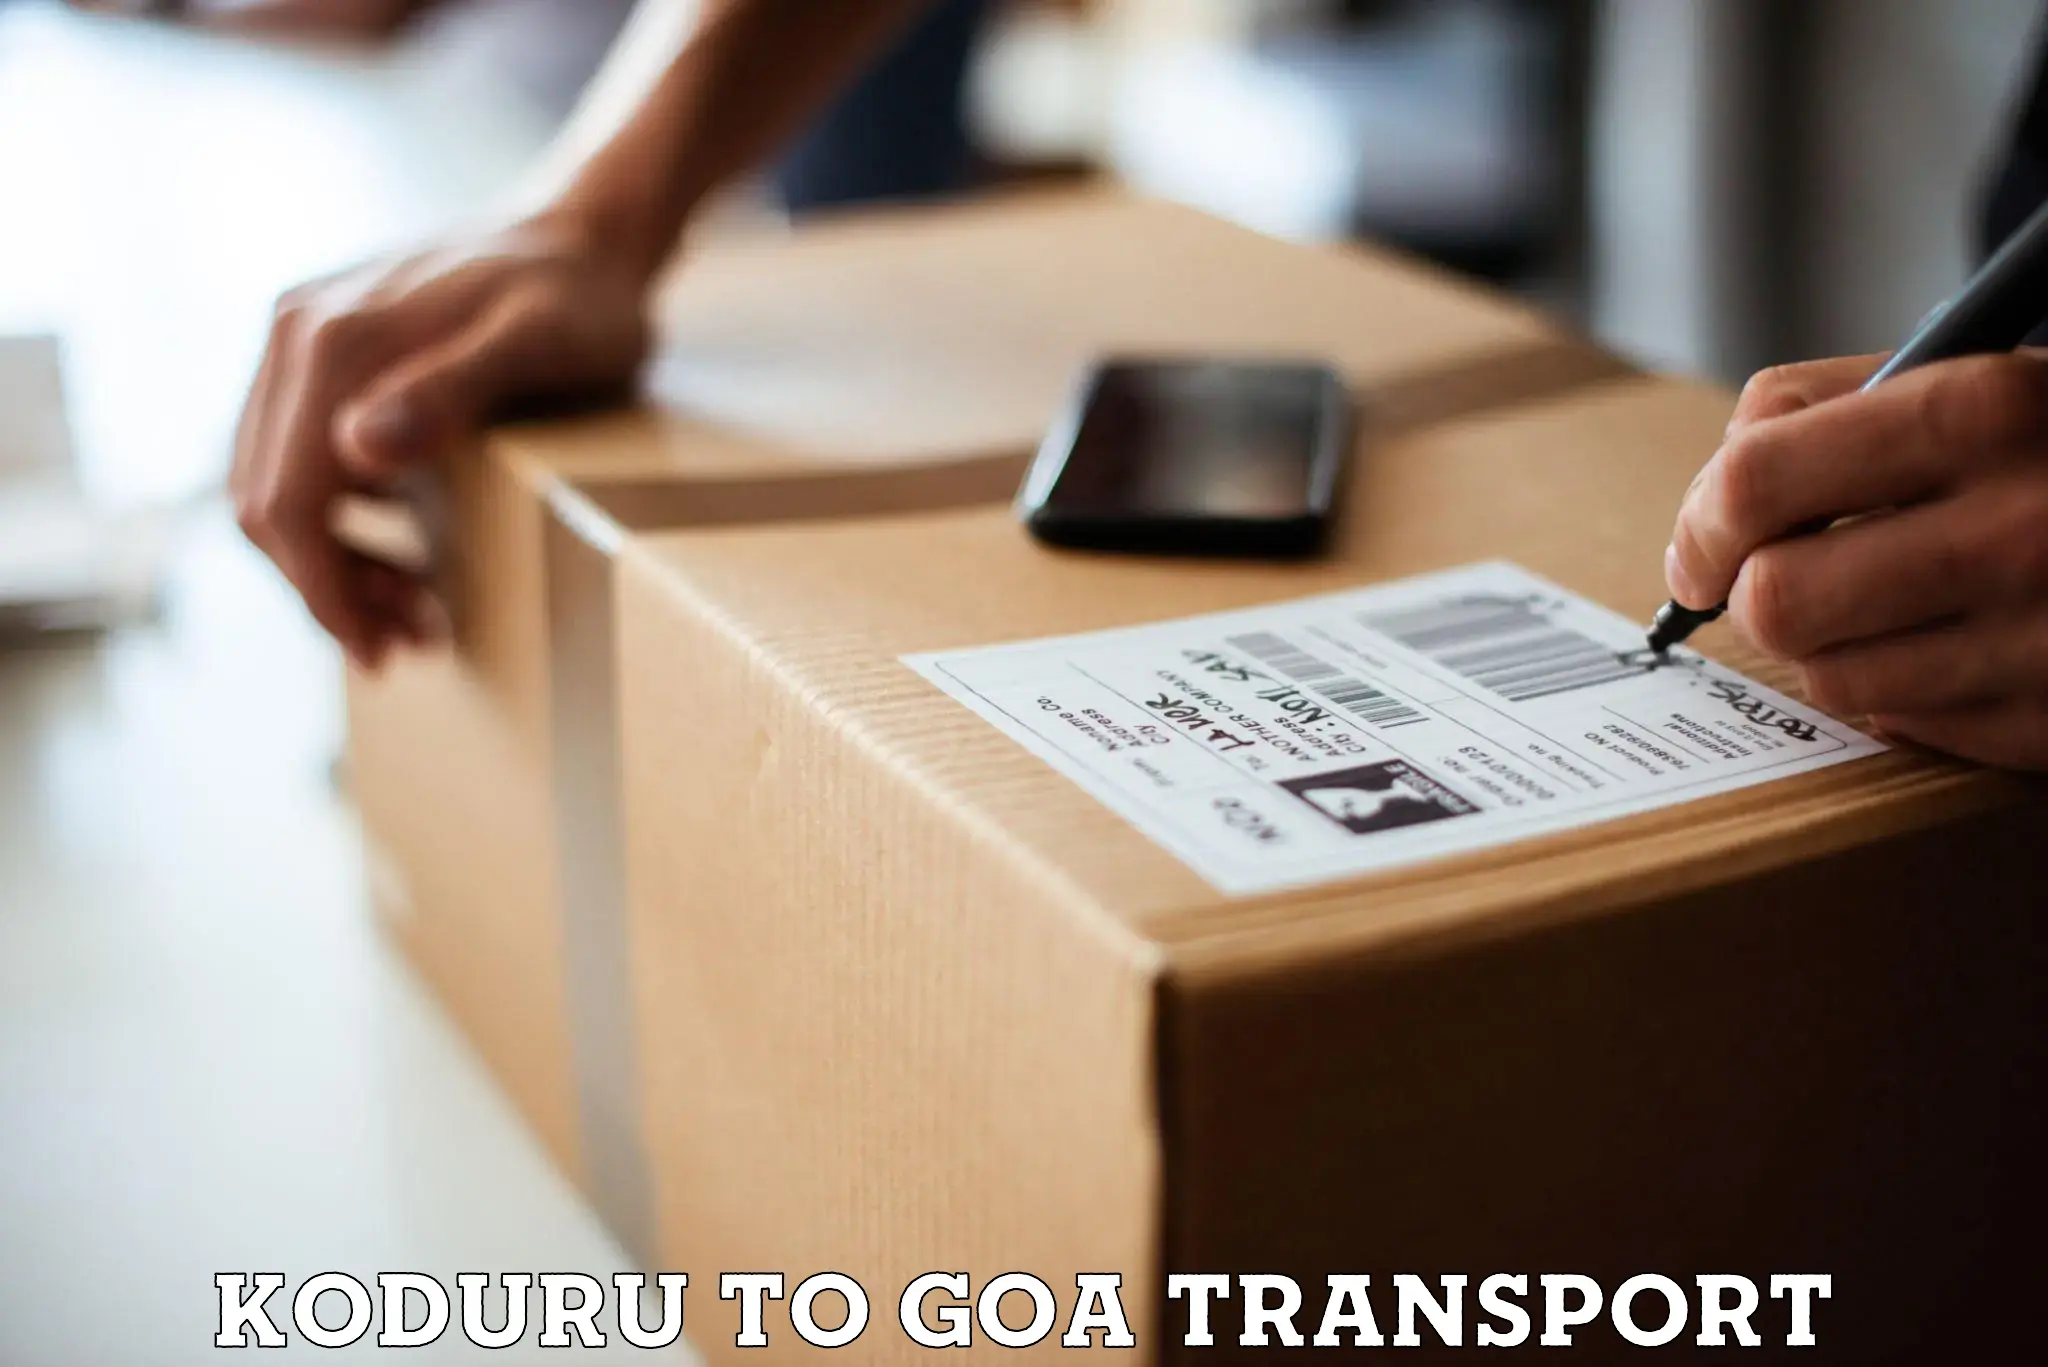 Nearest transport service Koduru to Ponda